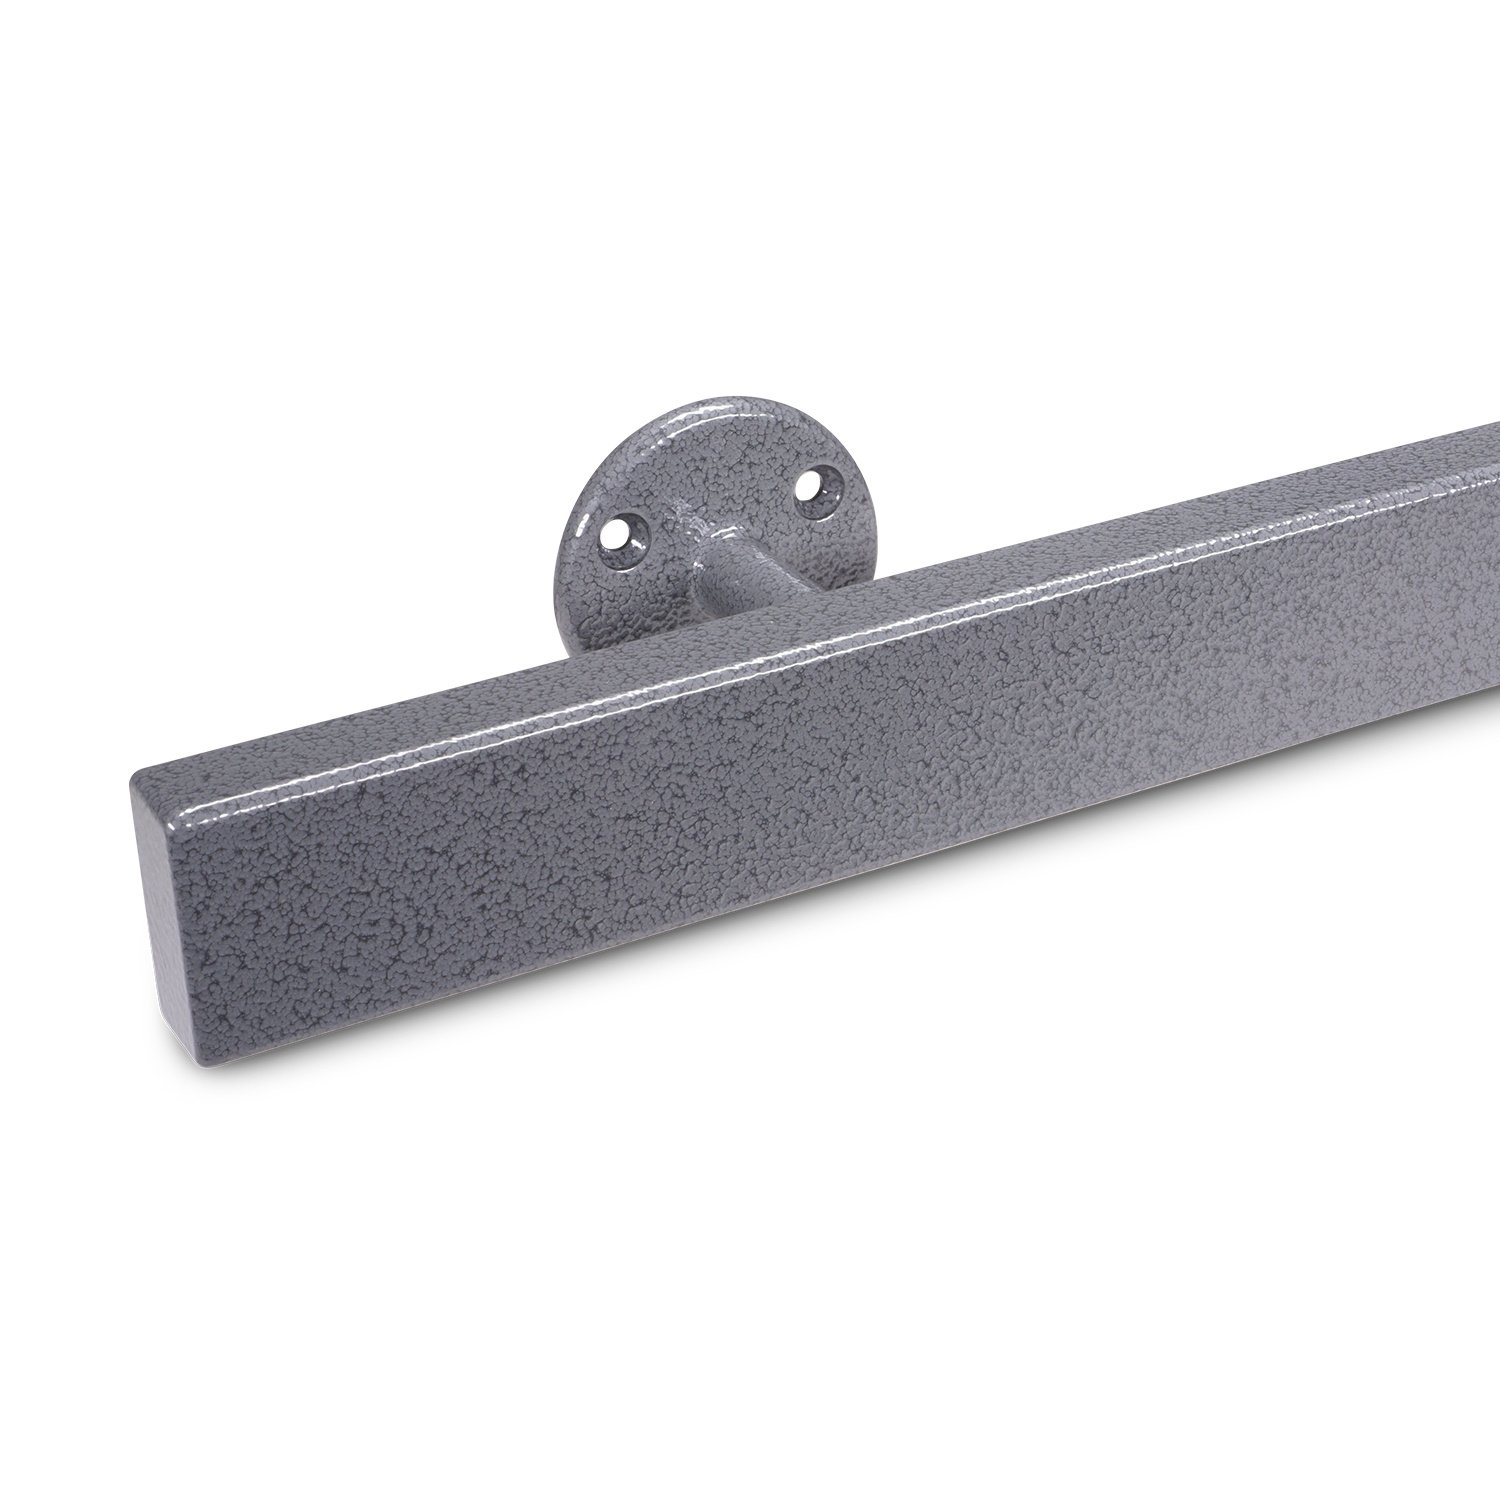  Handlauf Hammerschlag Optik beschichtet viereckig 40x20  Modell 4 - Rechteckige Treppengeländer - Treppenhandlauf mit grauem Hammerschlag Pulverbeschichtung